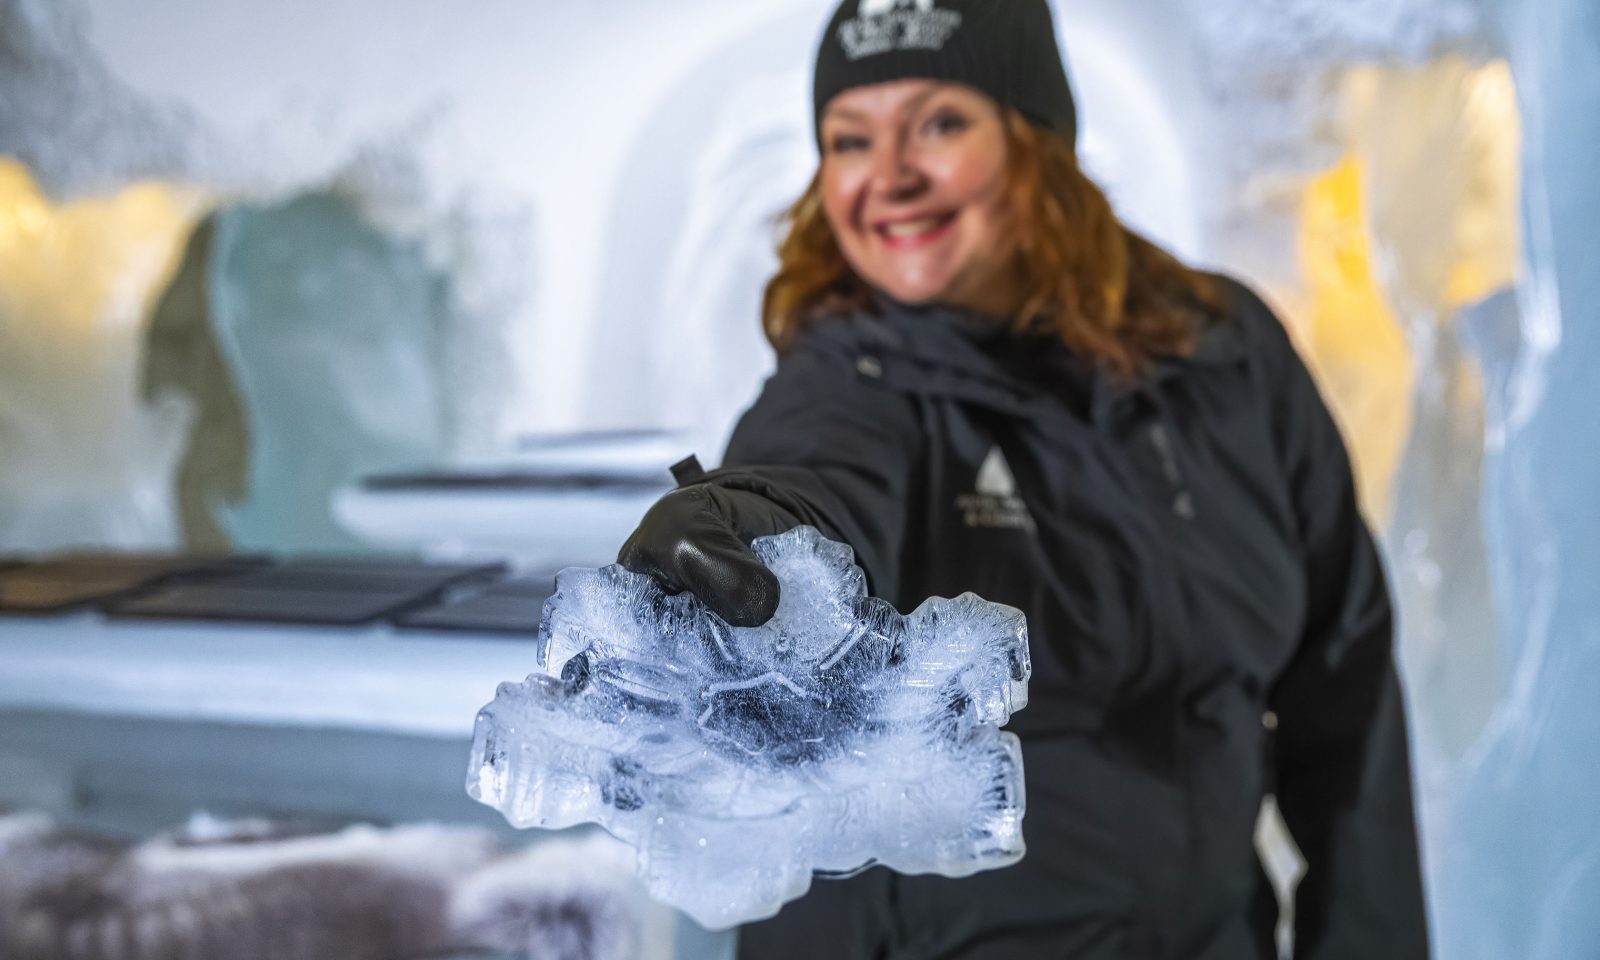 Tarjoilija ojentaa jäästä valmistettua lumihiutaleen mallista tarjouilulautasta.